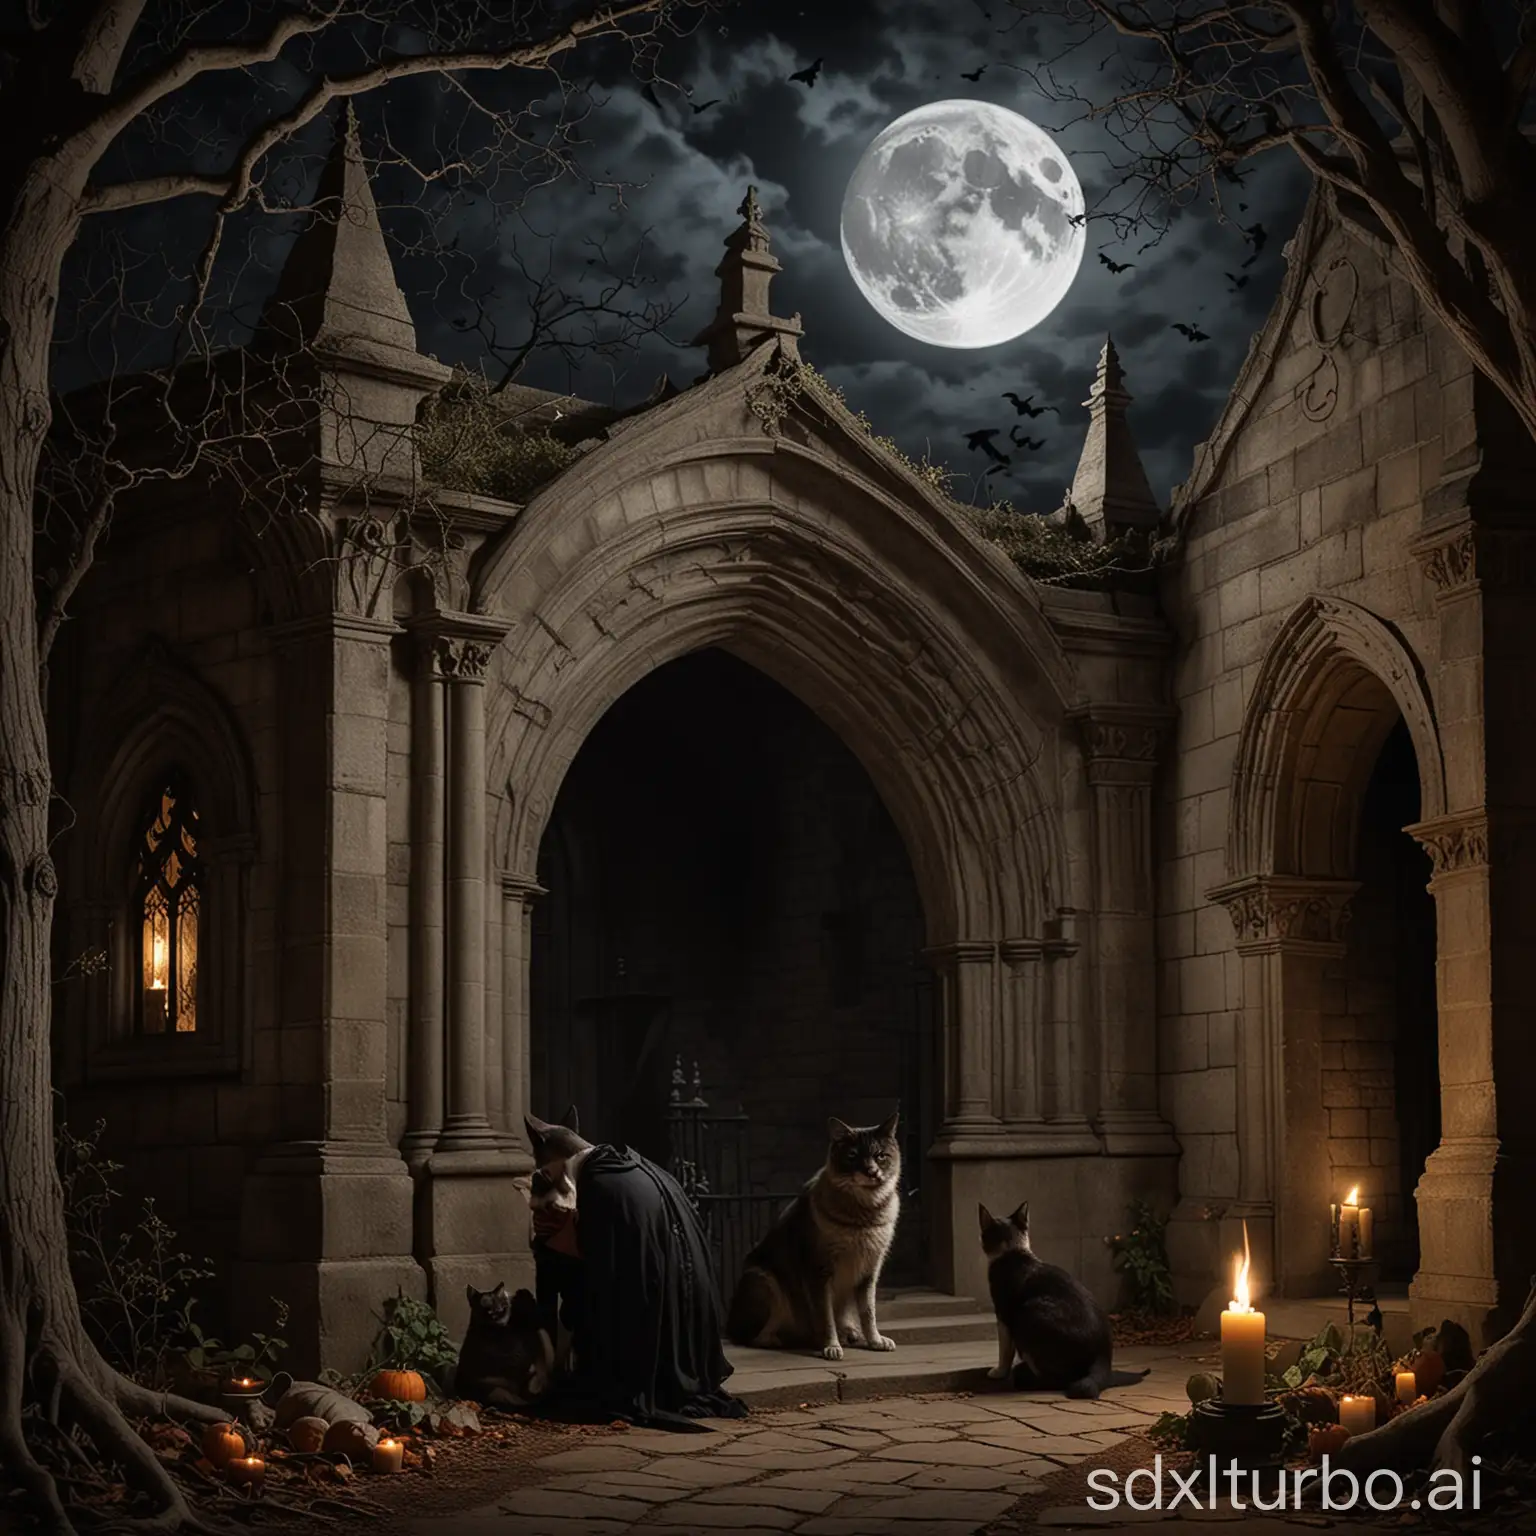 Ein gothic Paar sitzt romatisch vor einer offenen gruft bei kerzenlich unter einem Halbmond. Eine Katze schleicht sich an. Ein Hund schmiegt sich an sie und schaut sie verträumt an. Eine Fledermaus hängt an einem Baum. Ein Vampir schleicht sich von hinten an.